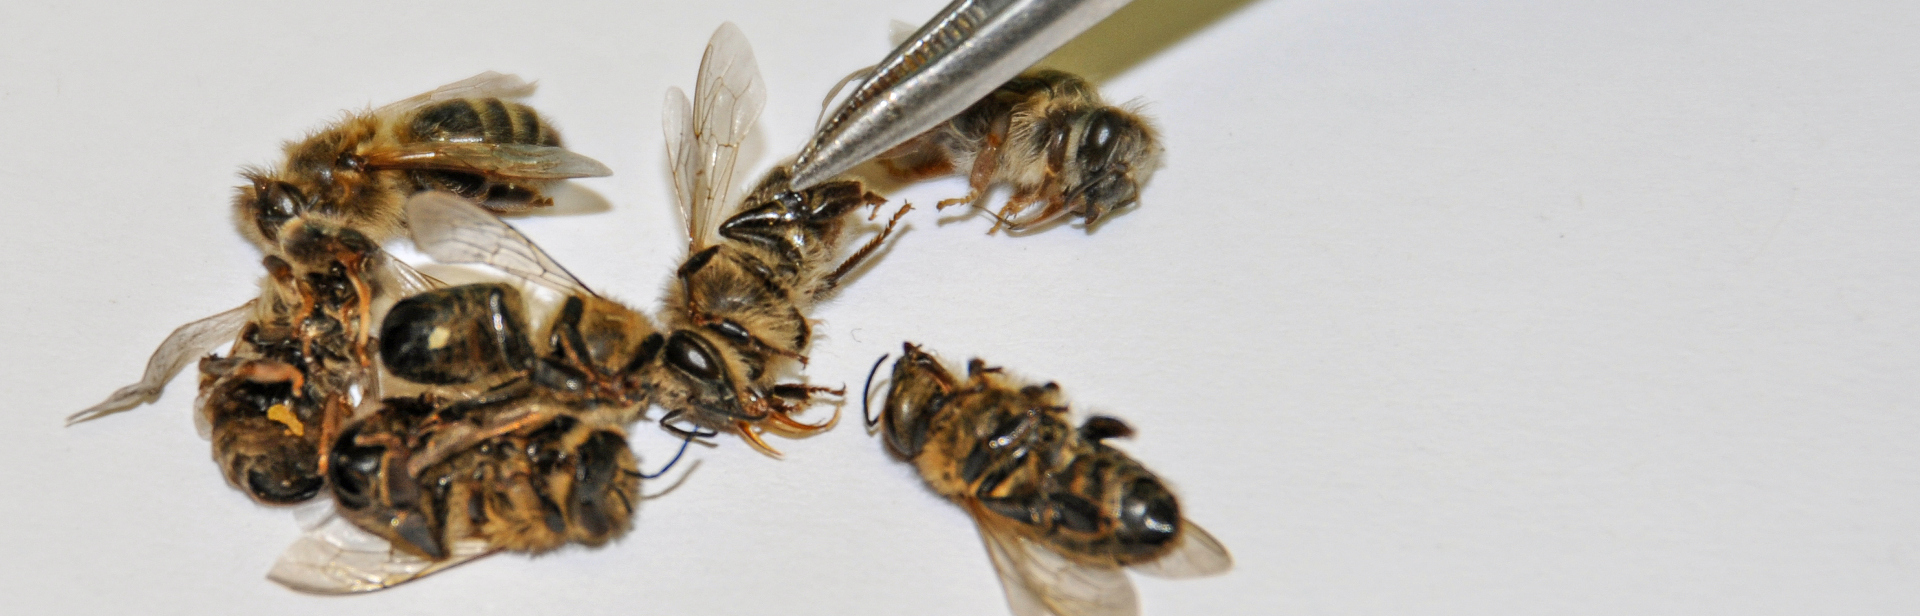 Bienenvergiftungen_Header